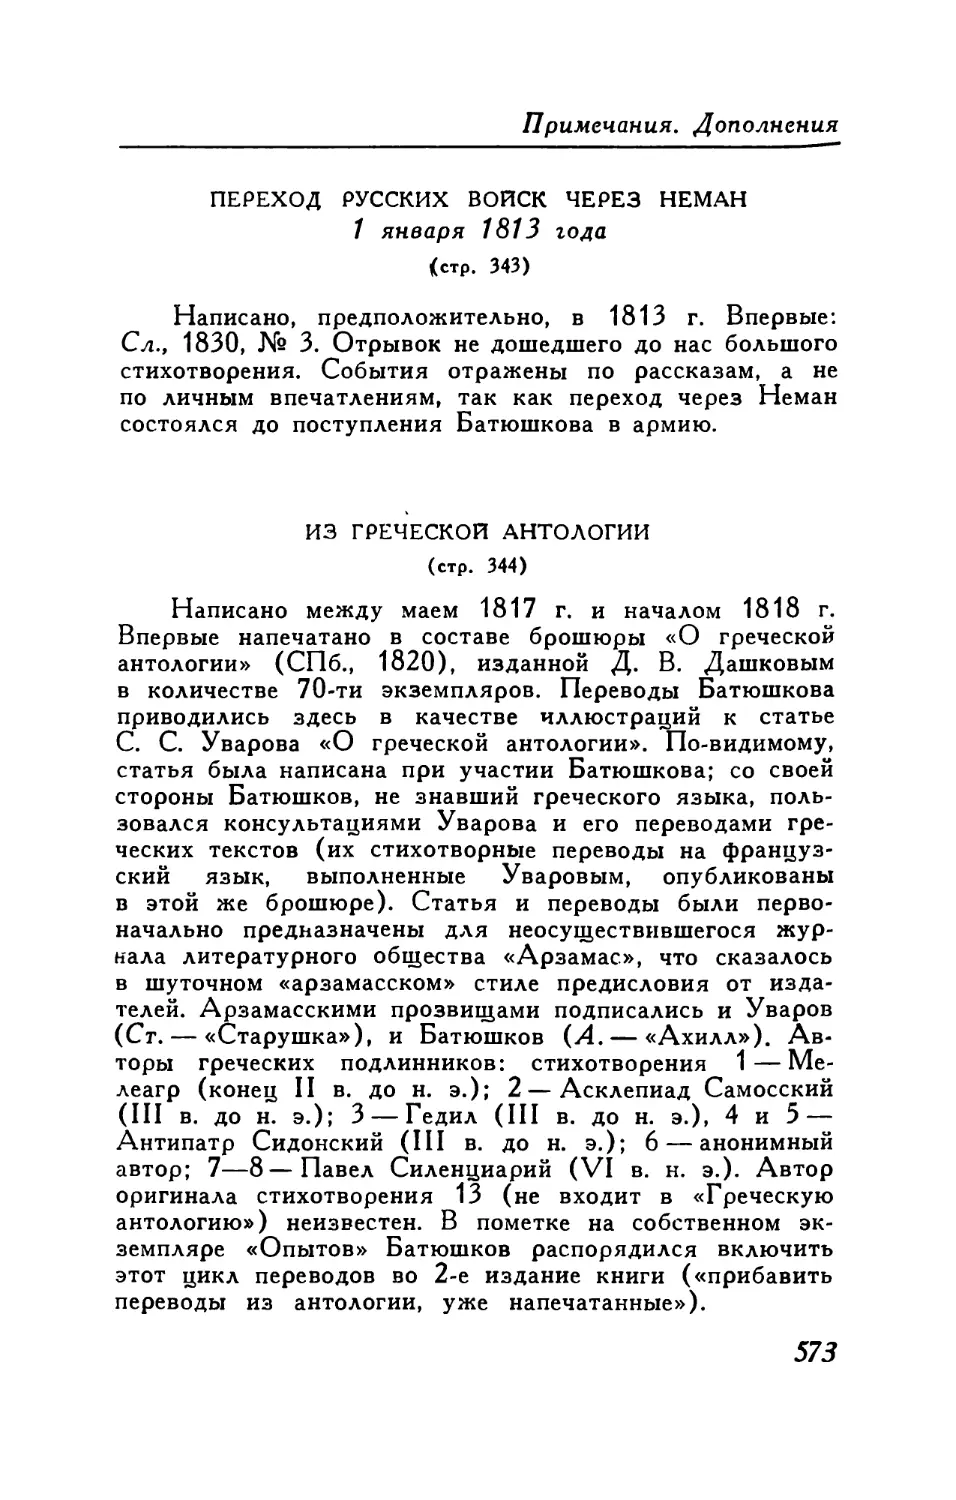 Переход русских войск через Неман 1 января 1813 года. Отрывок из большого стихотворения
Из греческой антологии